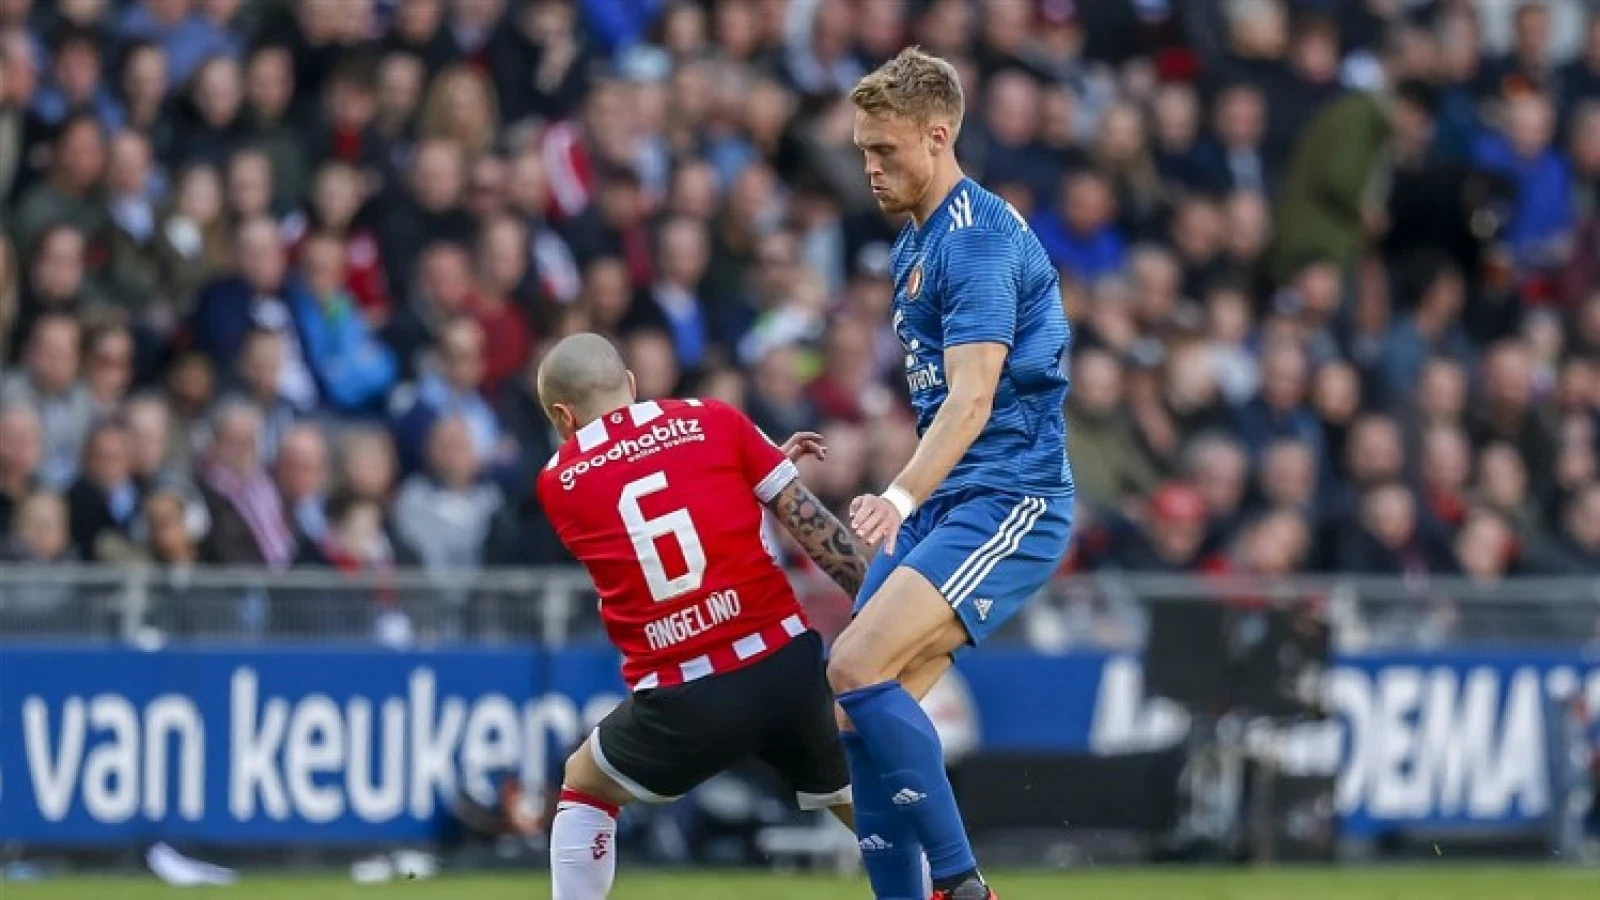 LIVE | PSV - Feyenoord 1-1 | Einde wedstrijd